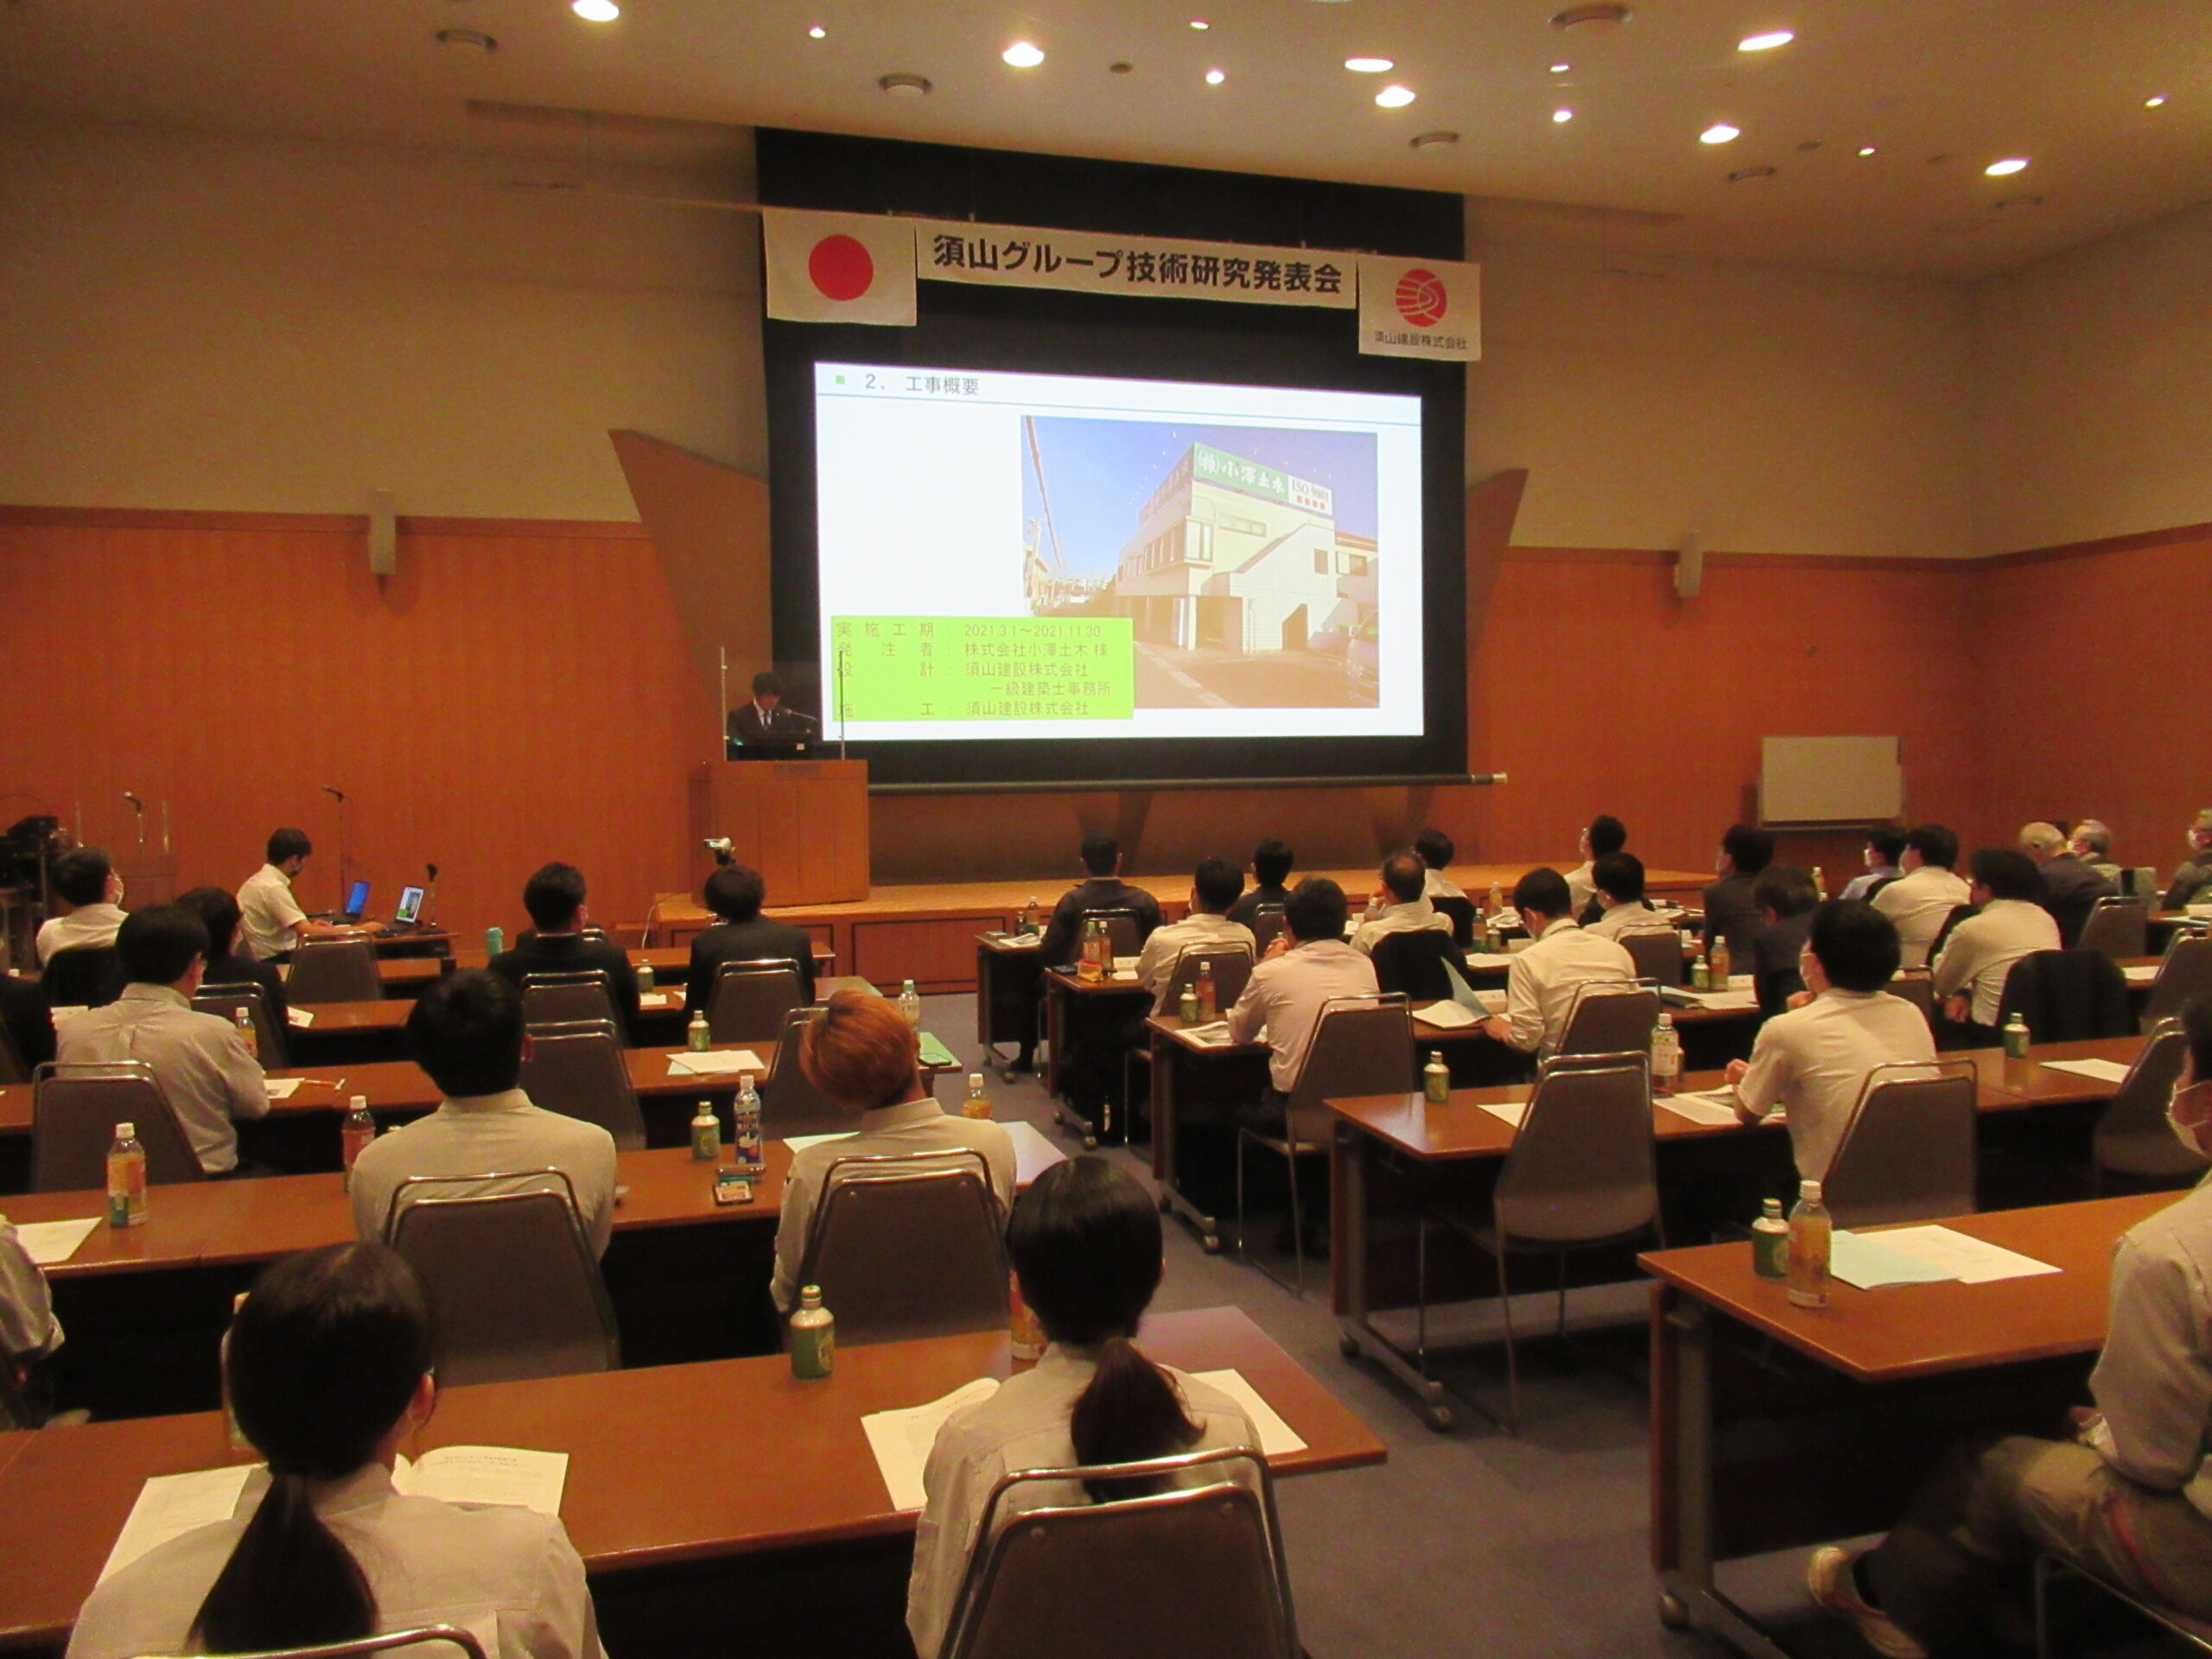 「第45回須山グループ技術研究発表会」を開催いたしました